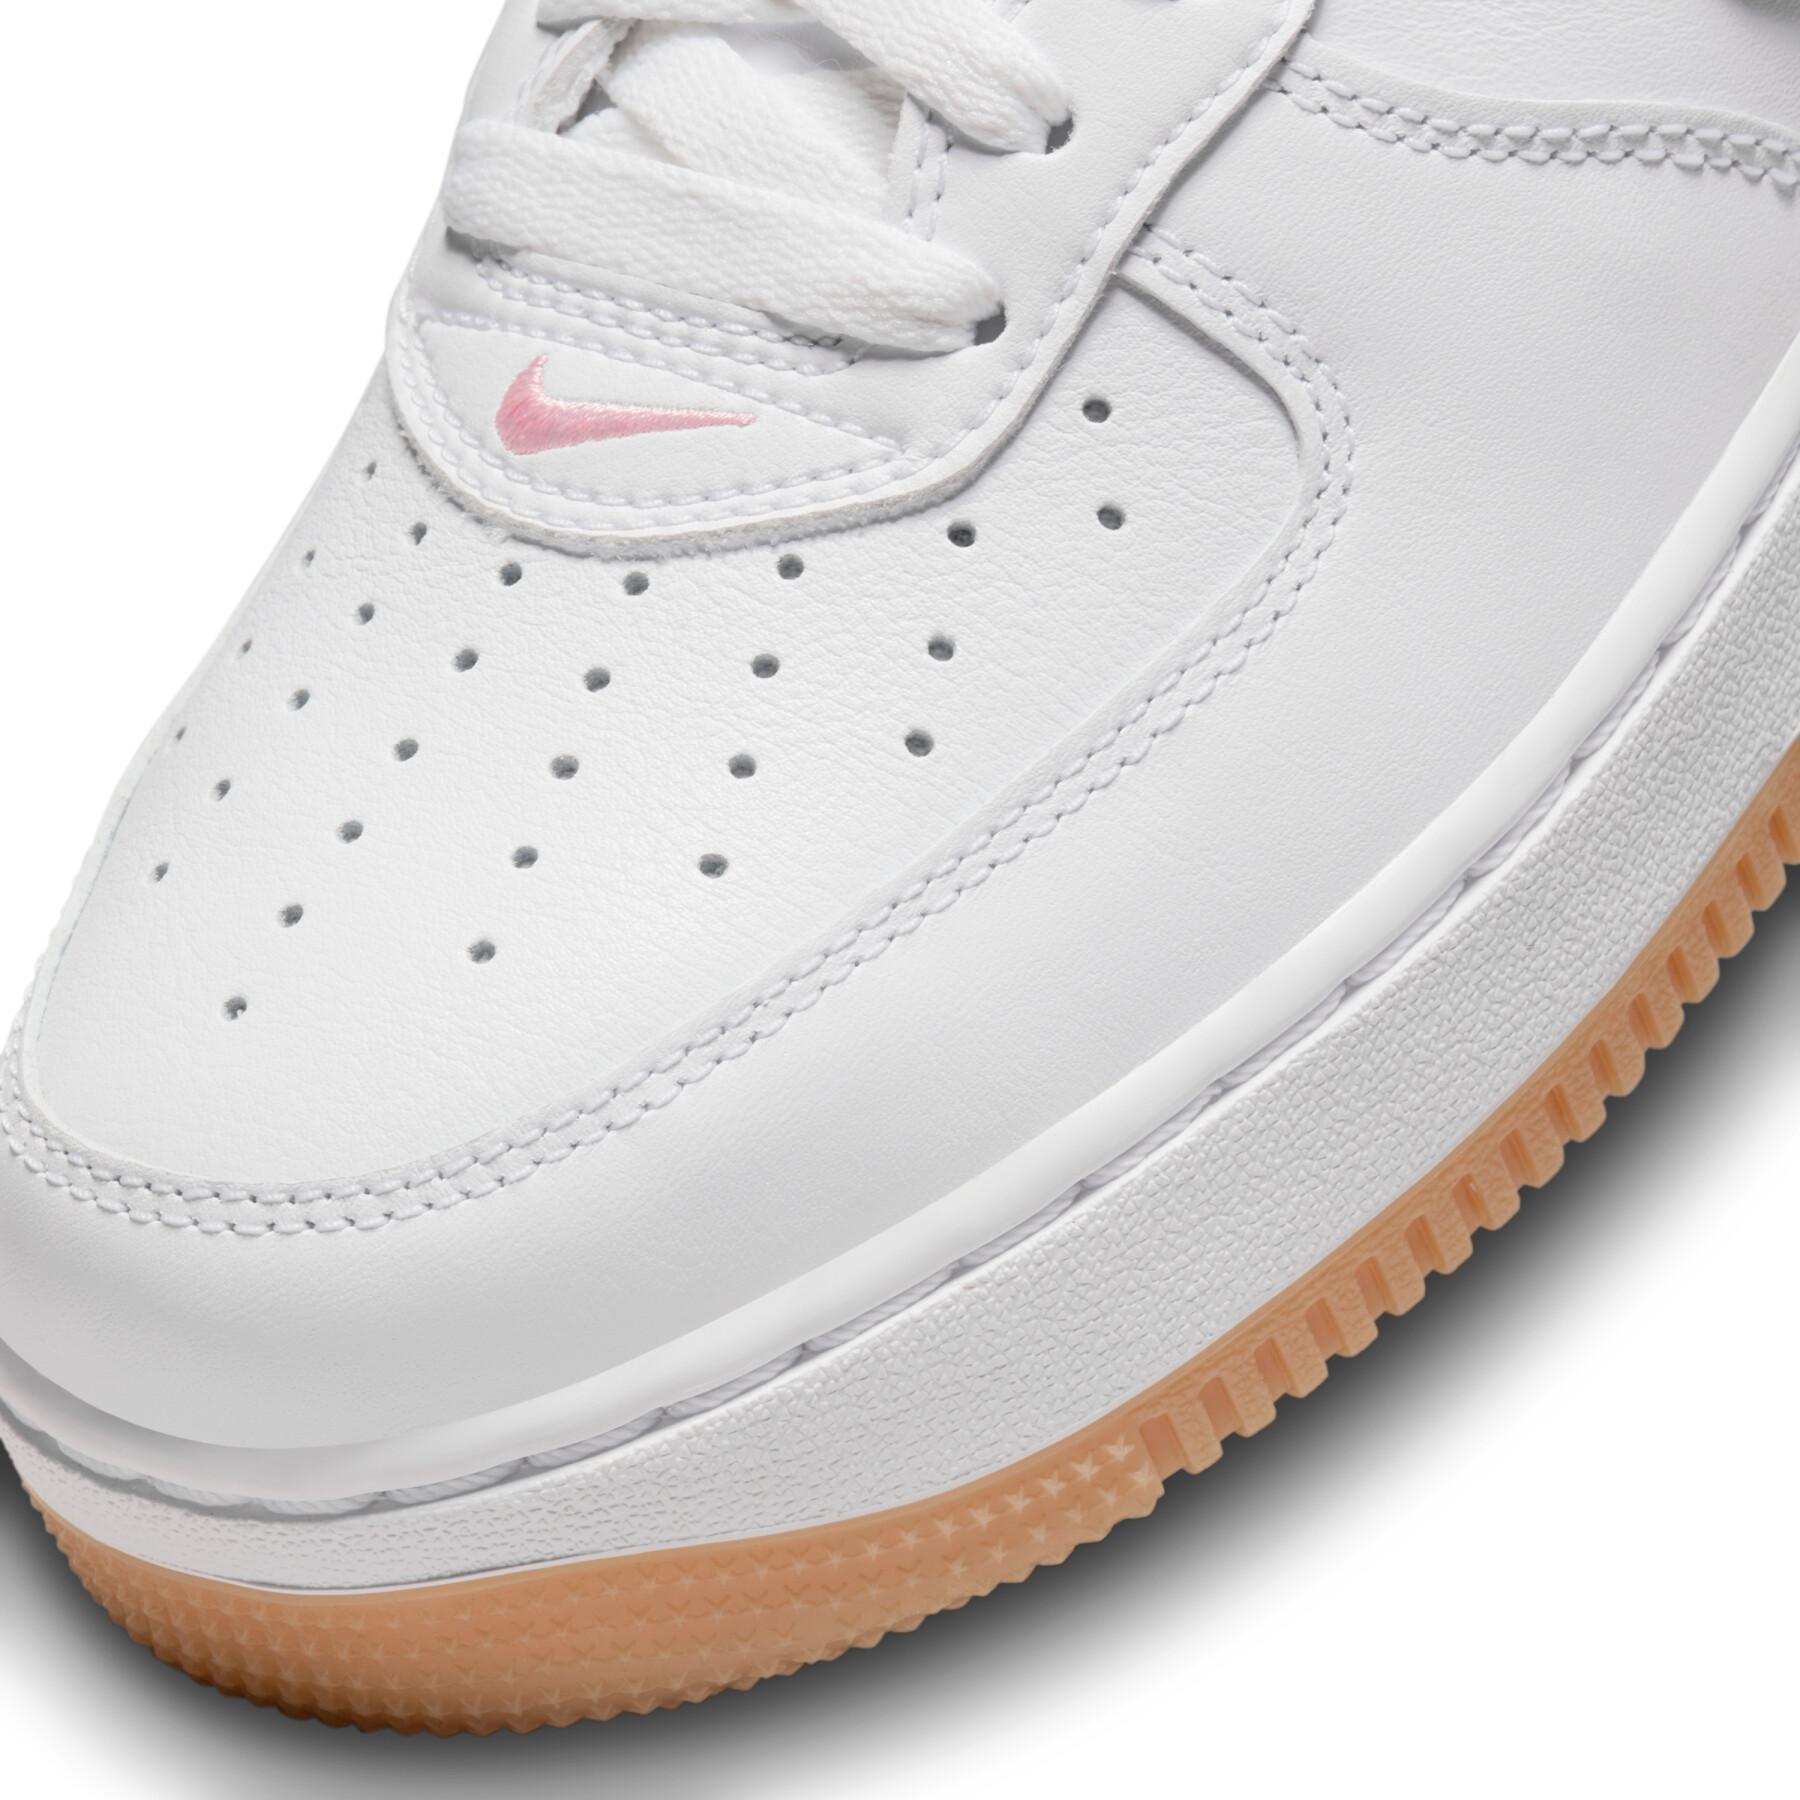 Sneakers Nike Air Force 1 Retro